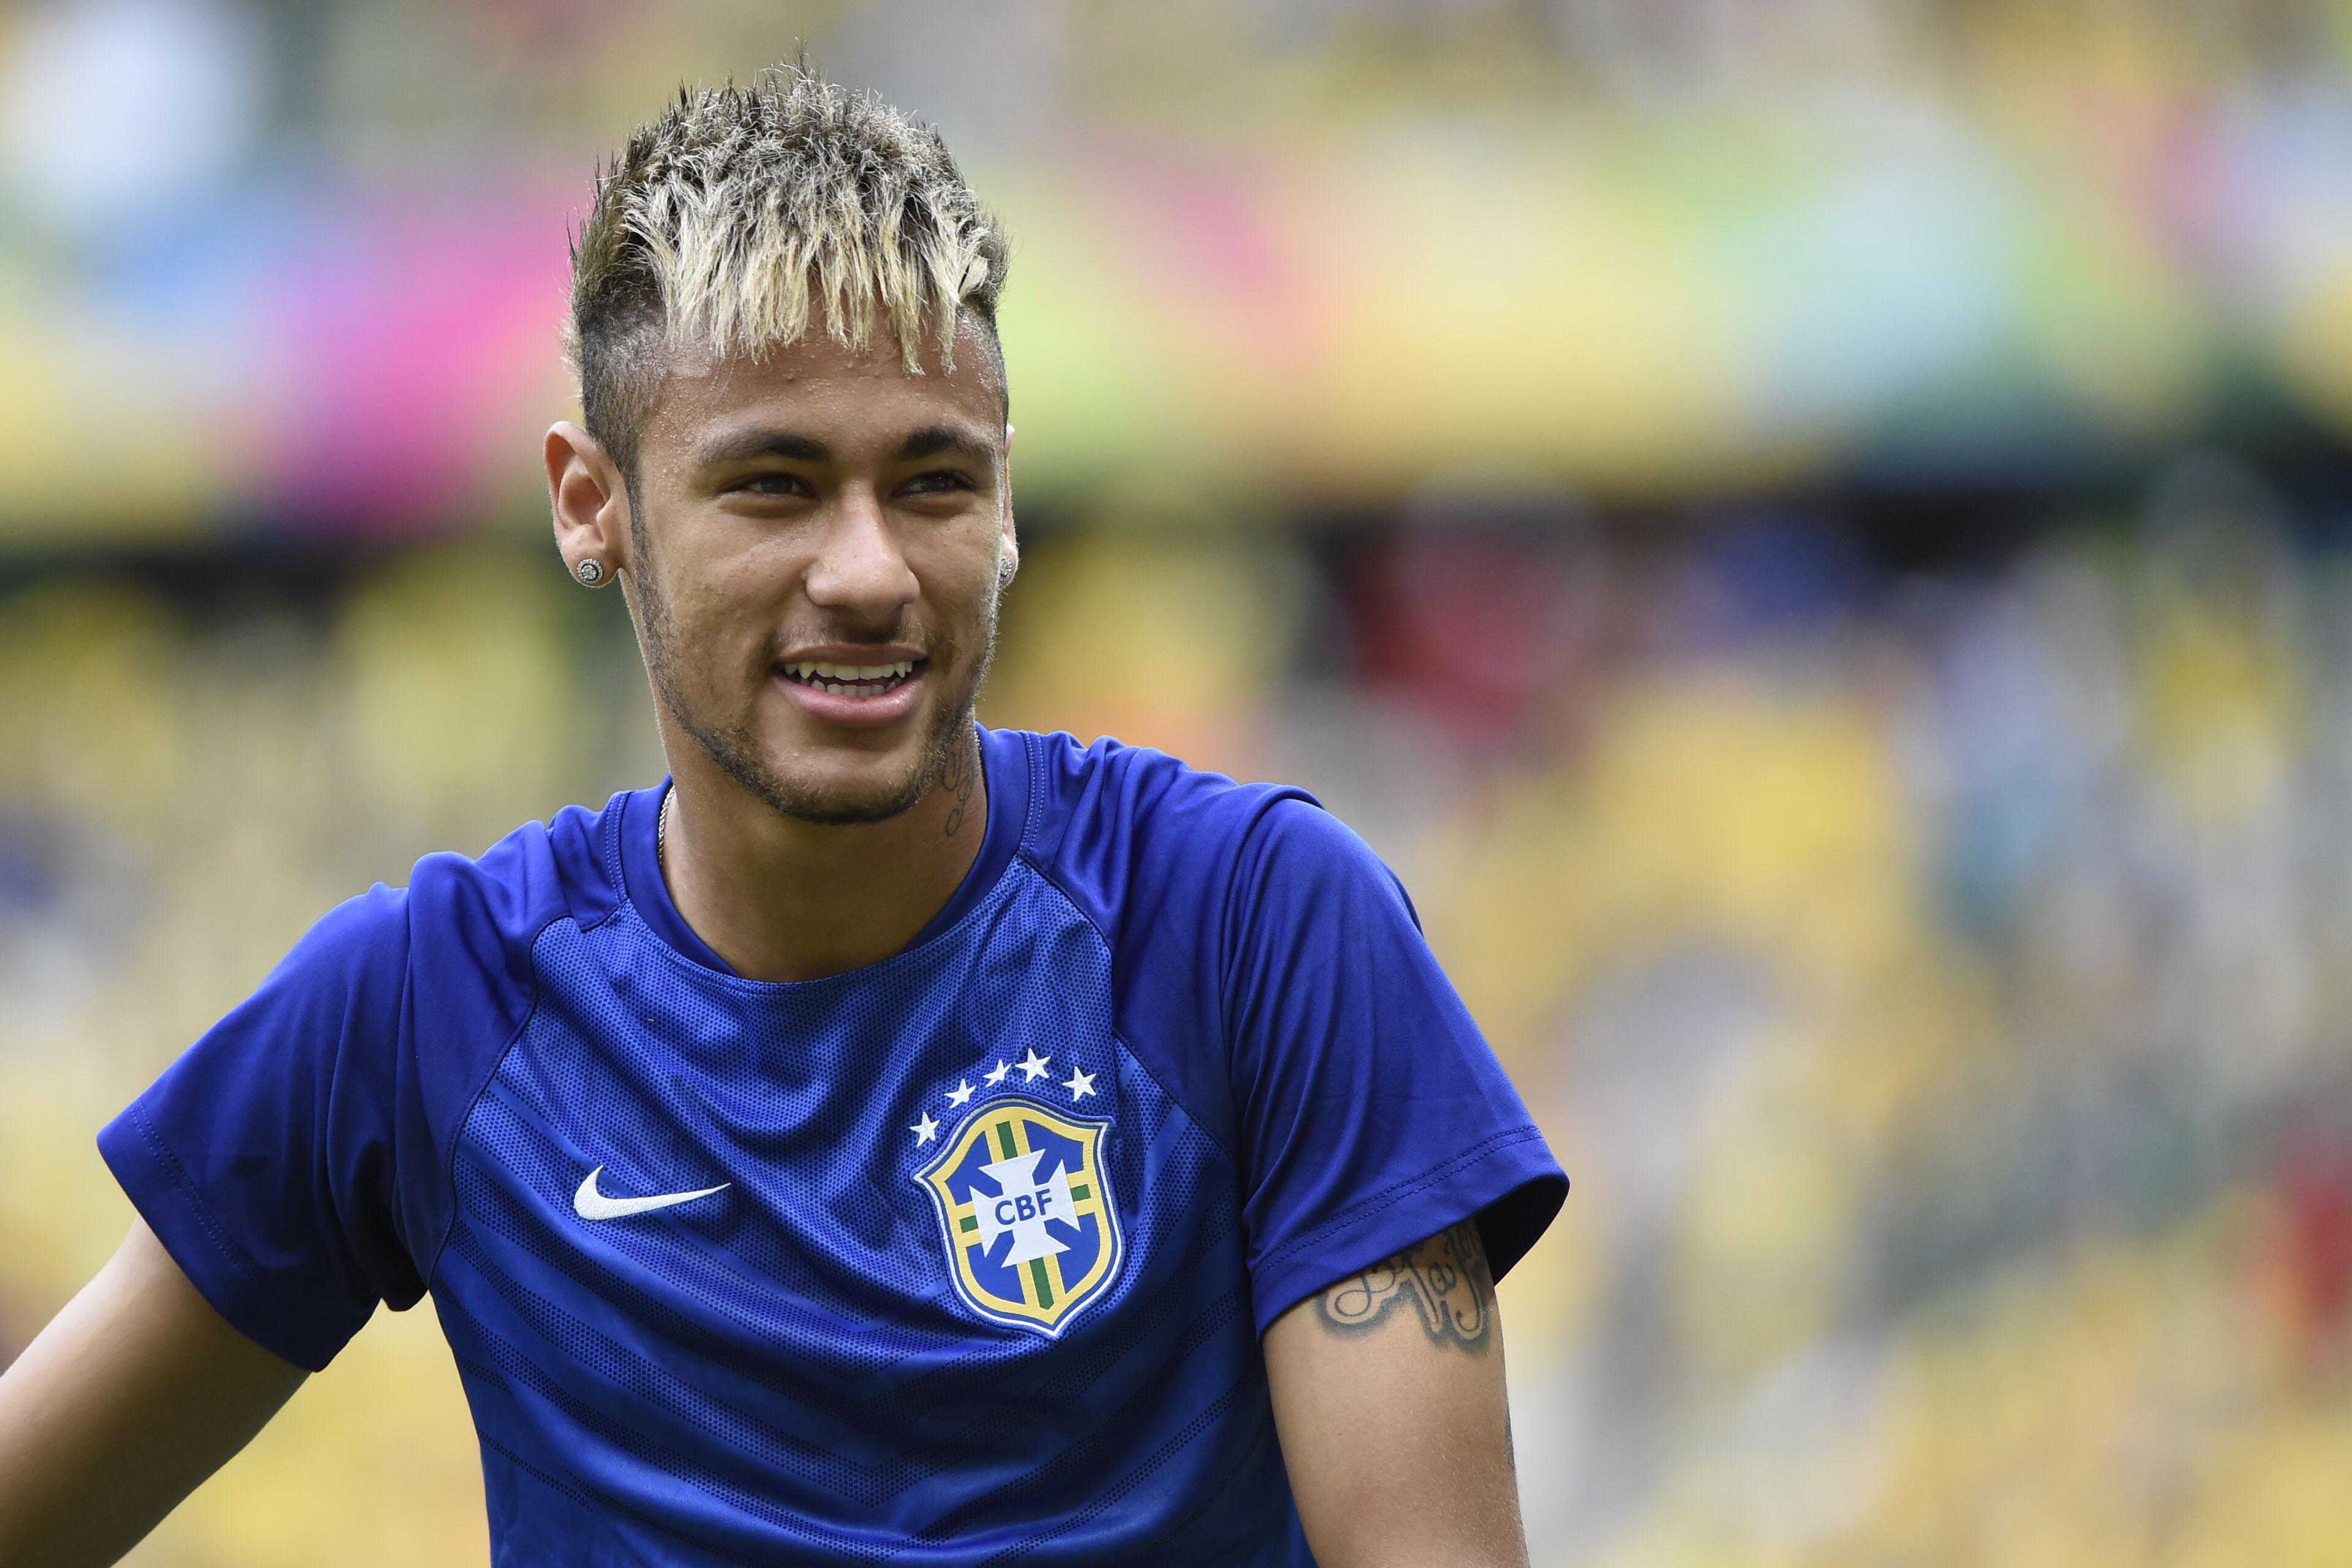 Calcio: Neymar, difficile eguagliare Messi e Cristiano Ronaldo